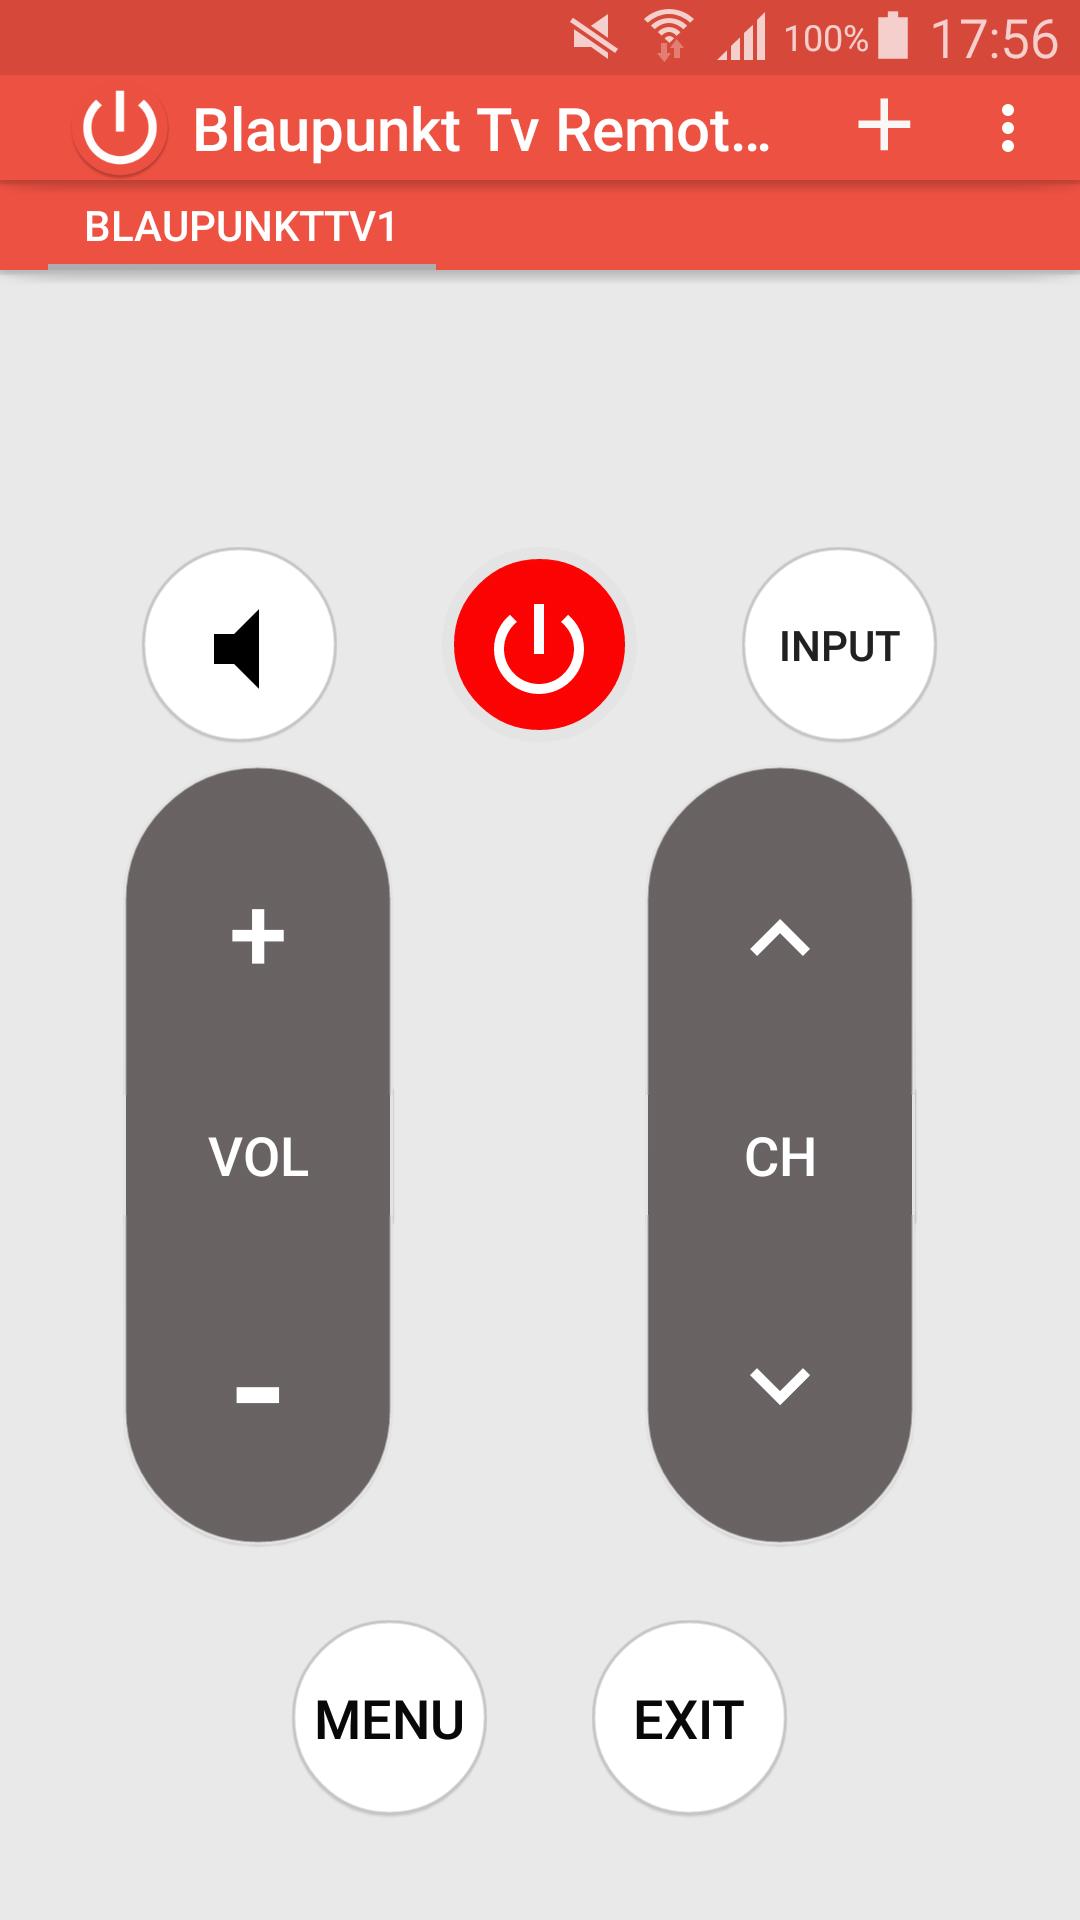 Blaupunkt Tv Remote Control für Android - APK herunterladen